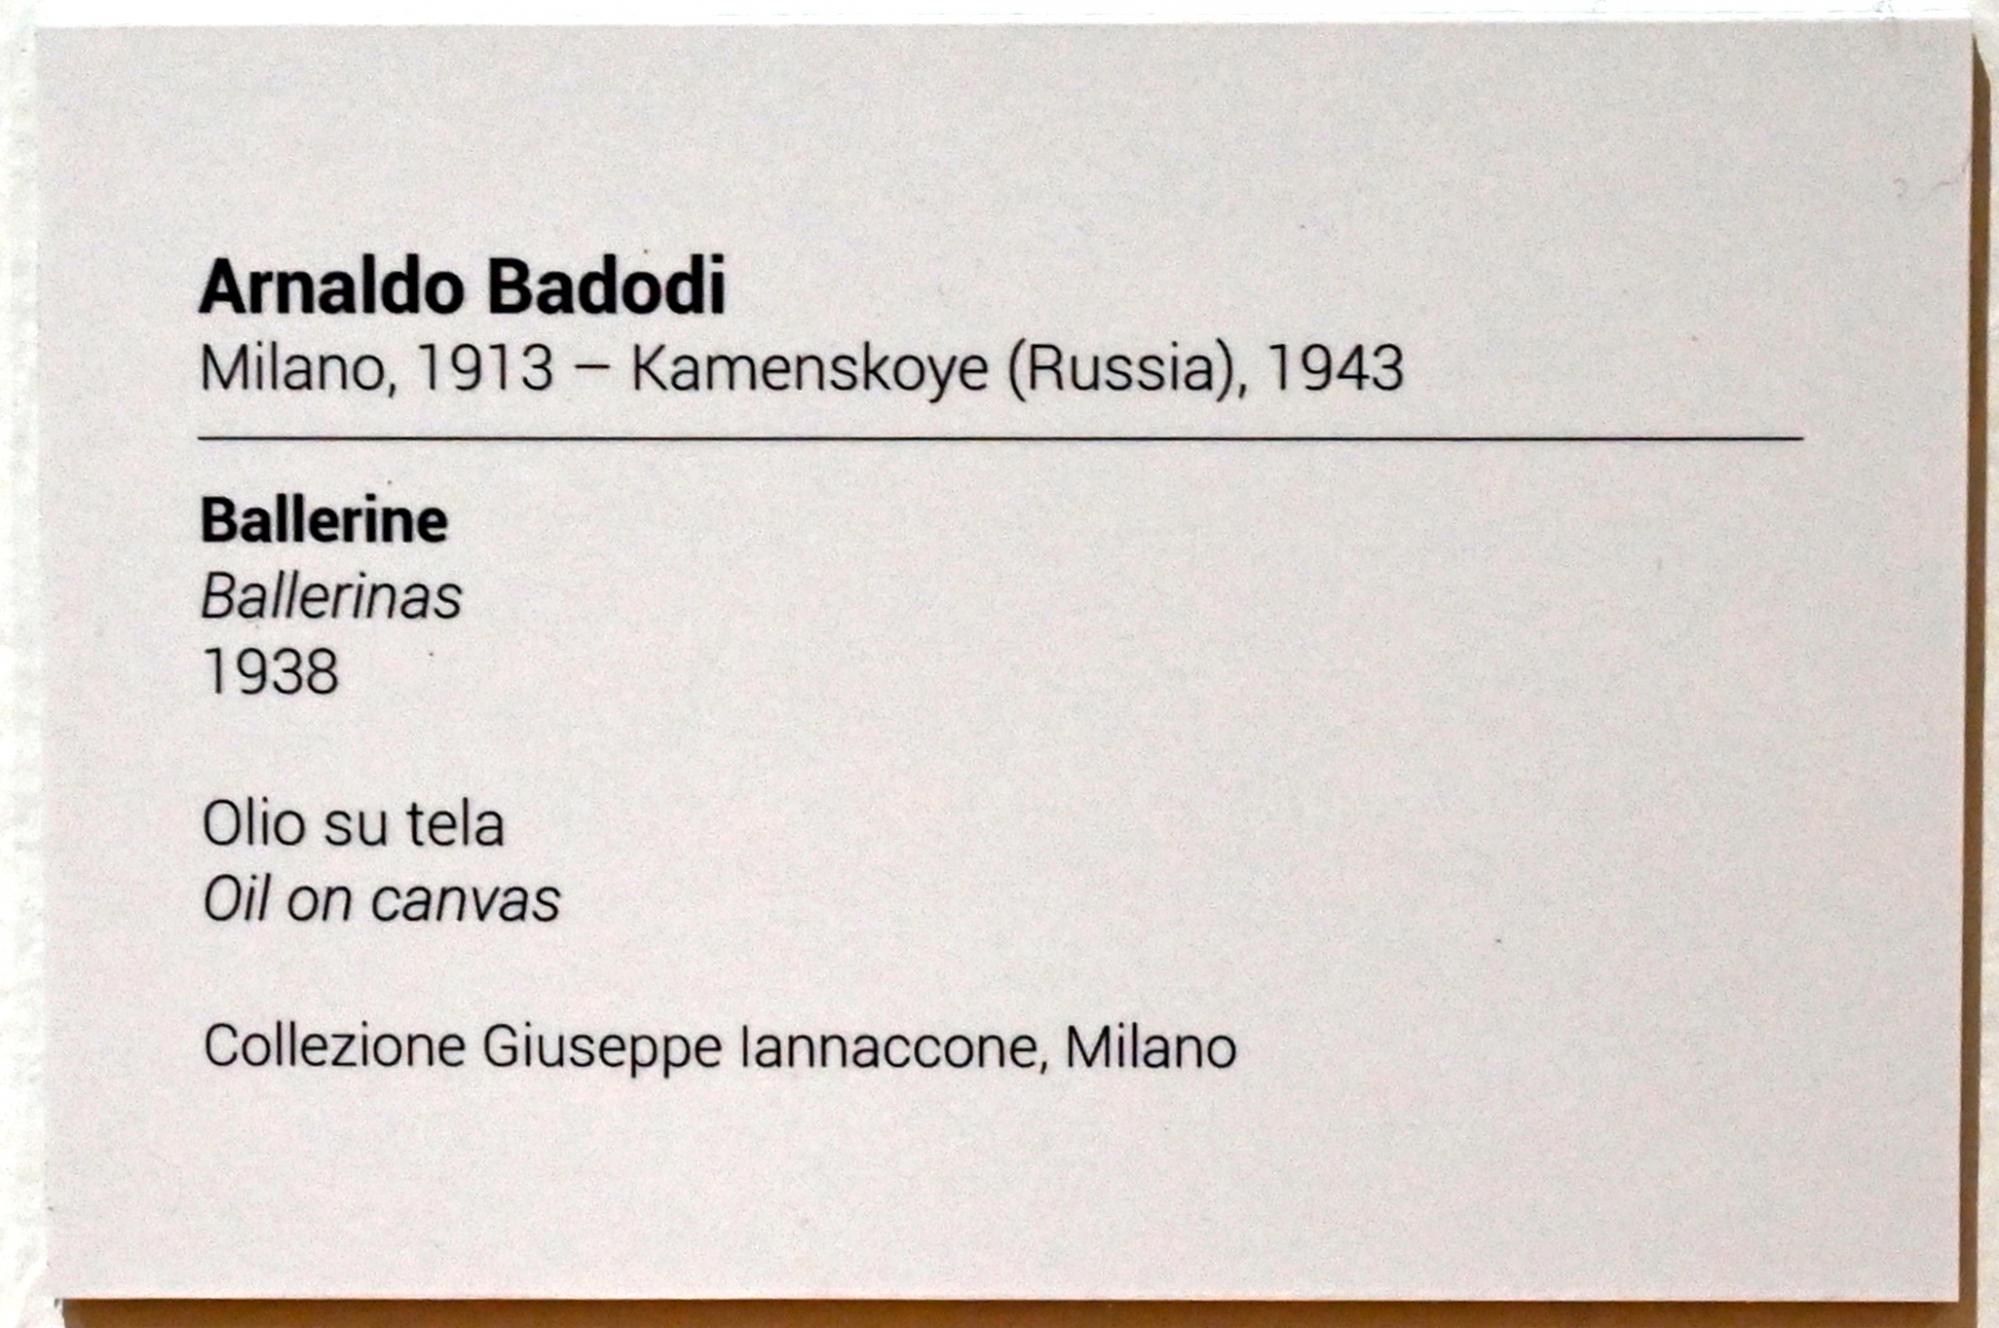 Arnaldo Badodi (1938–1941), Ballerinen, Turin, GAM Torino, Ausstellung "Eine Reise gegen den Strom" vom 05.05.-12.09.2021, Saal 3, 1938, Bild 2/2